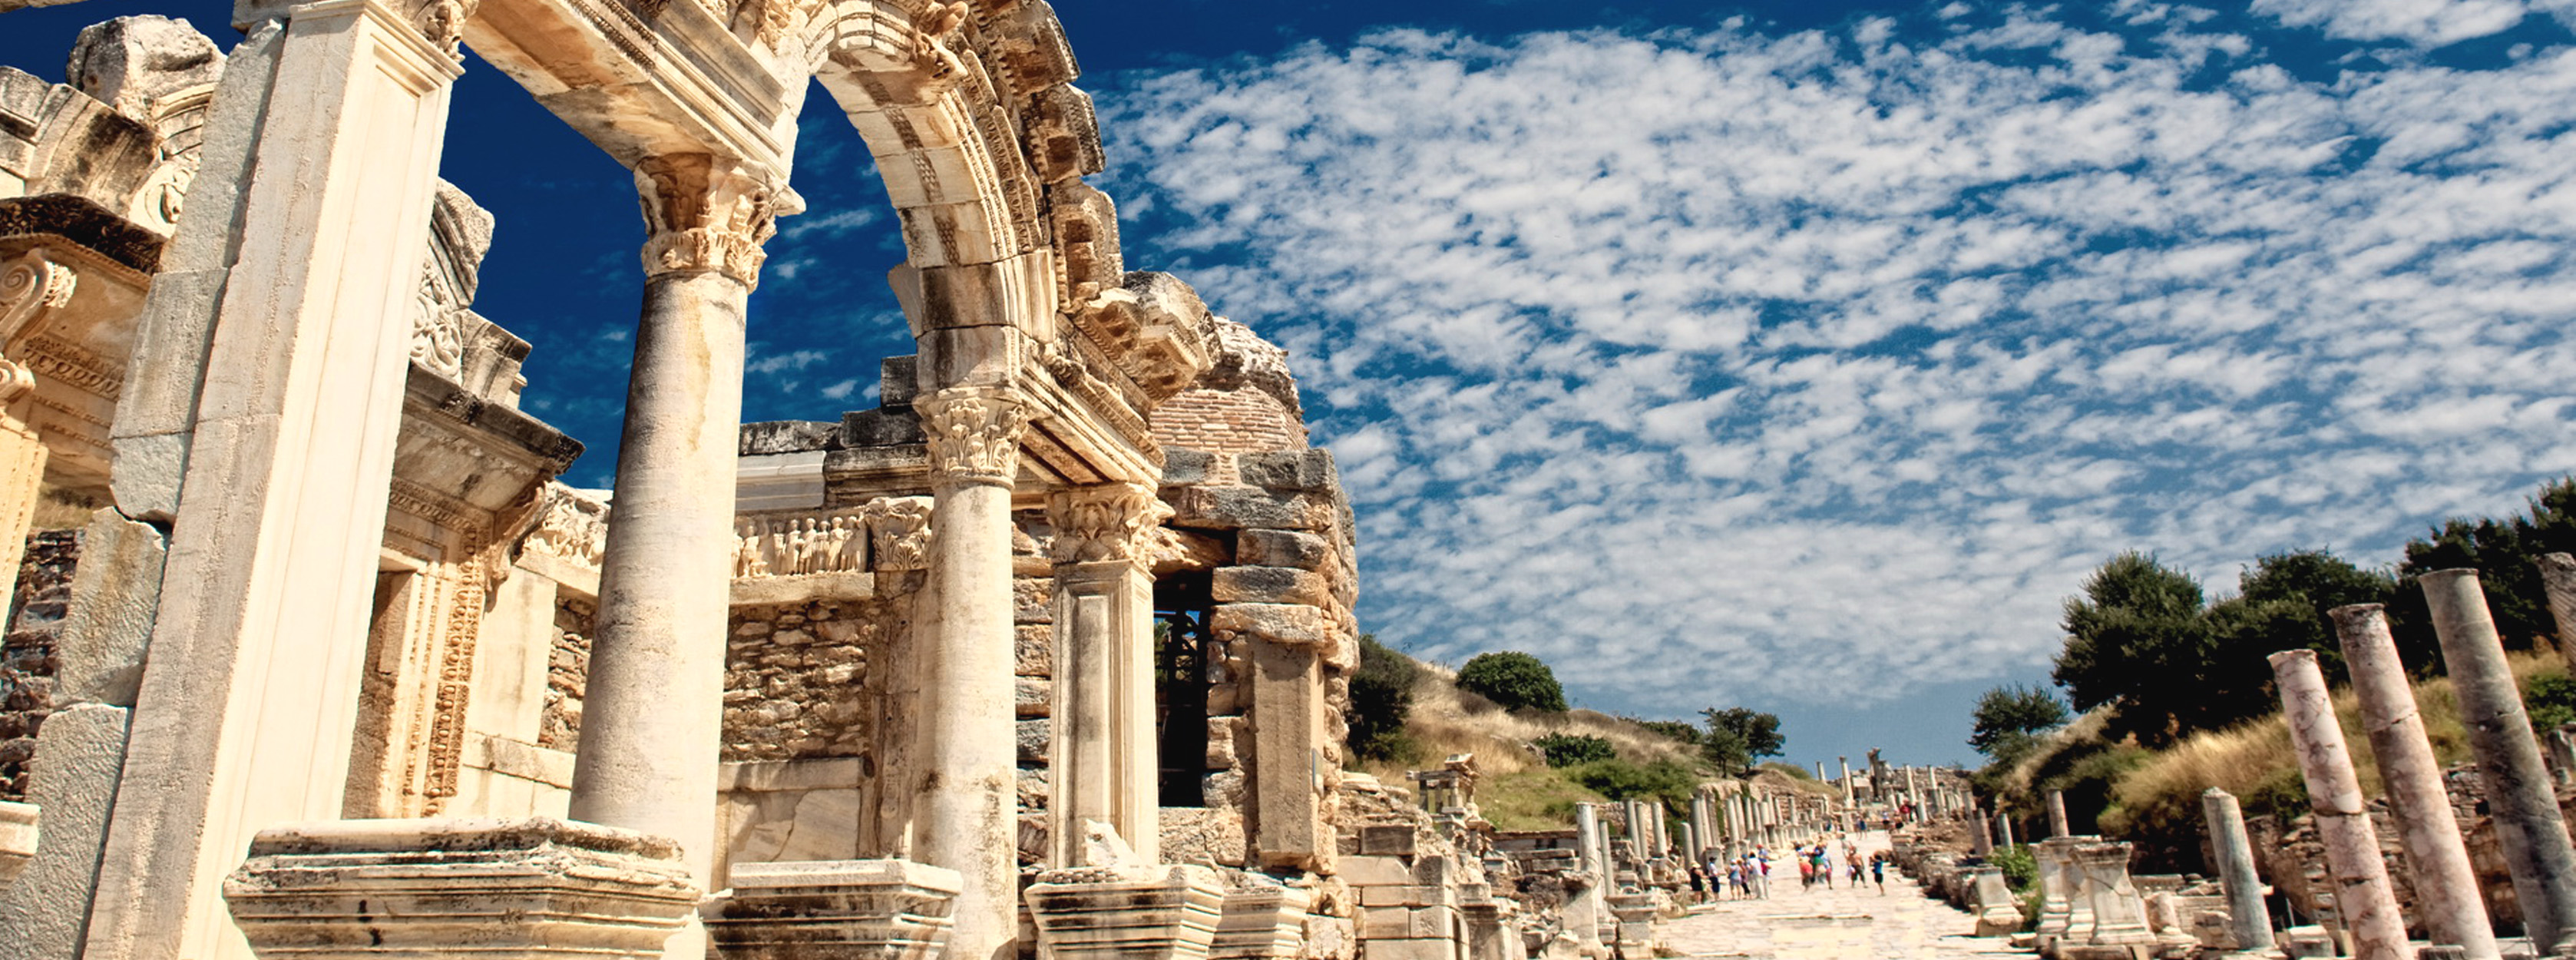 以弗所 Ephesus